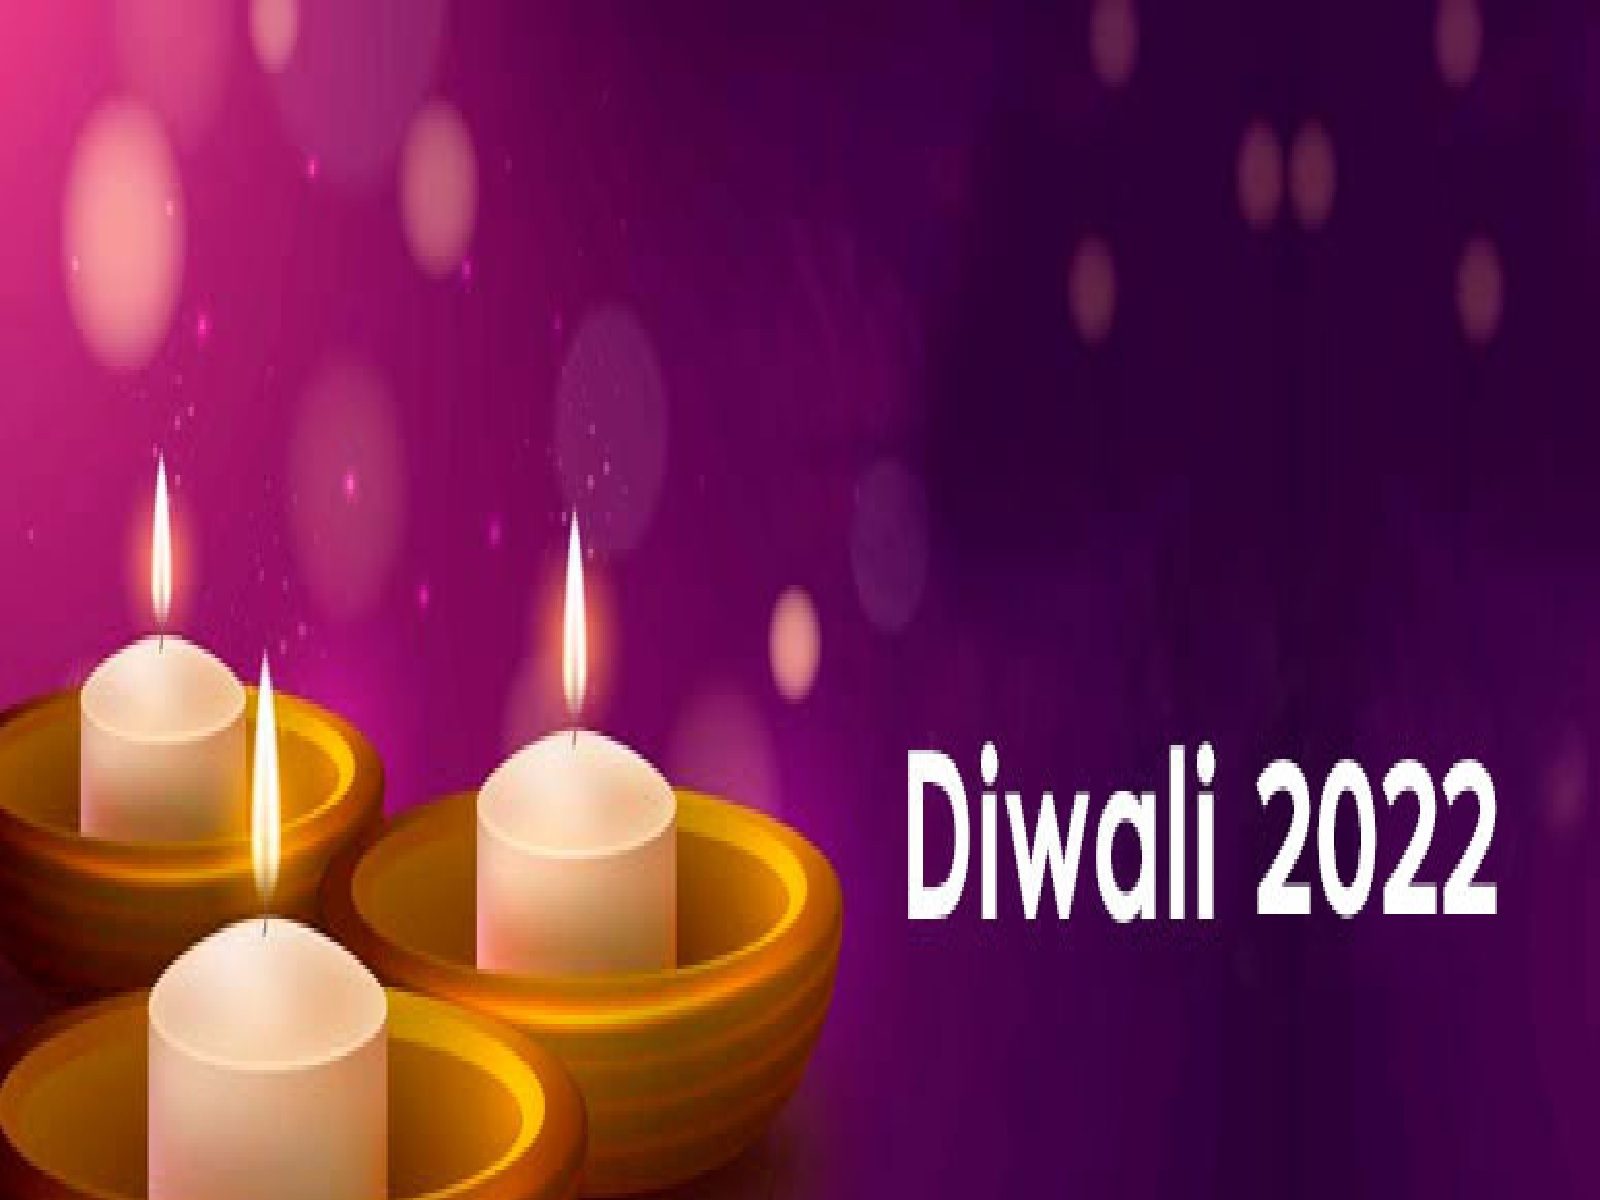 Diwali 2022 Date: ਇਕੱਠੇ ਮਨਾਈ ਜਾਵੇਗੀ ਛੋਟੀ 'ਤੇ ਵੱਡੀ ਦੀਵਾਲੀ! ਜਾਣੋ ਦੋਵਾਂ ਦੀ ਪੂਜਾ ਦਾ ਸ਼ੁਭ ਸਮਾਂ